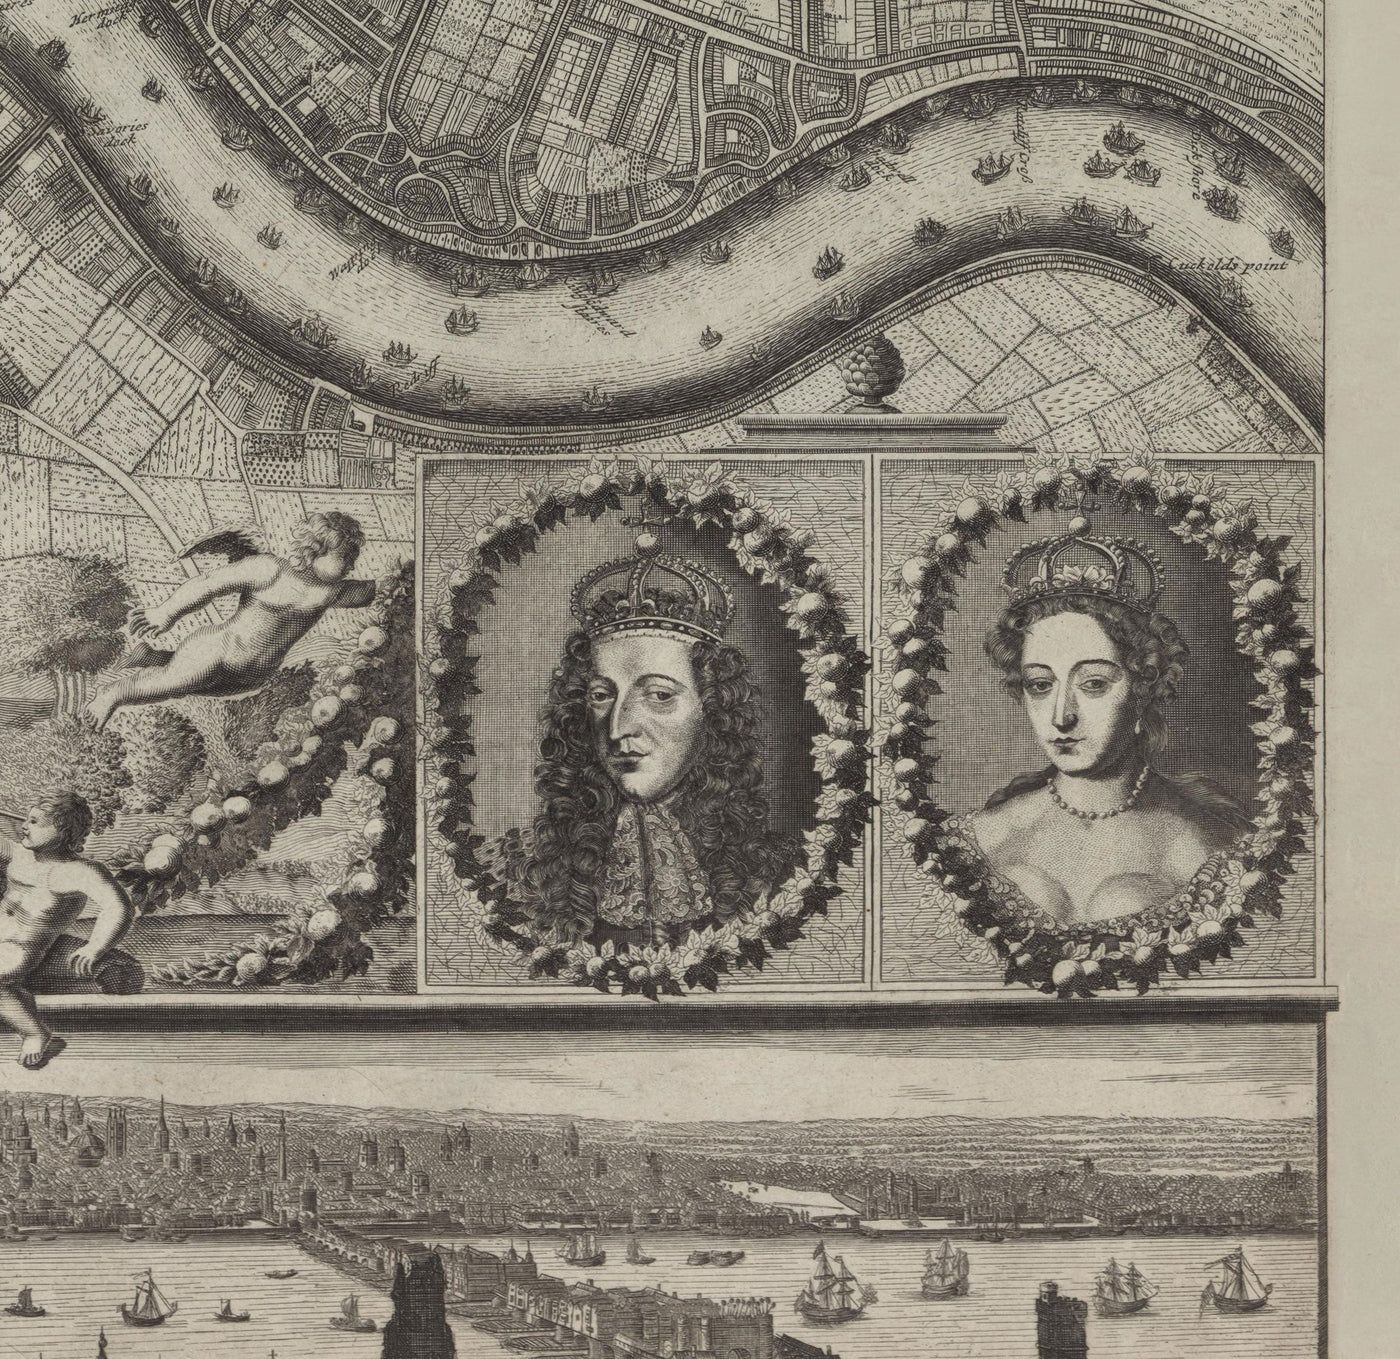 Rare carte ancienne de Londres en 1690 par Joannes de Ram